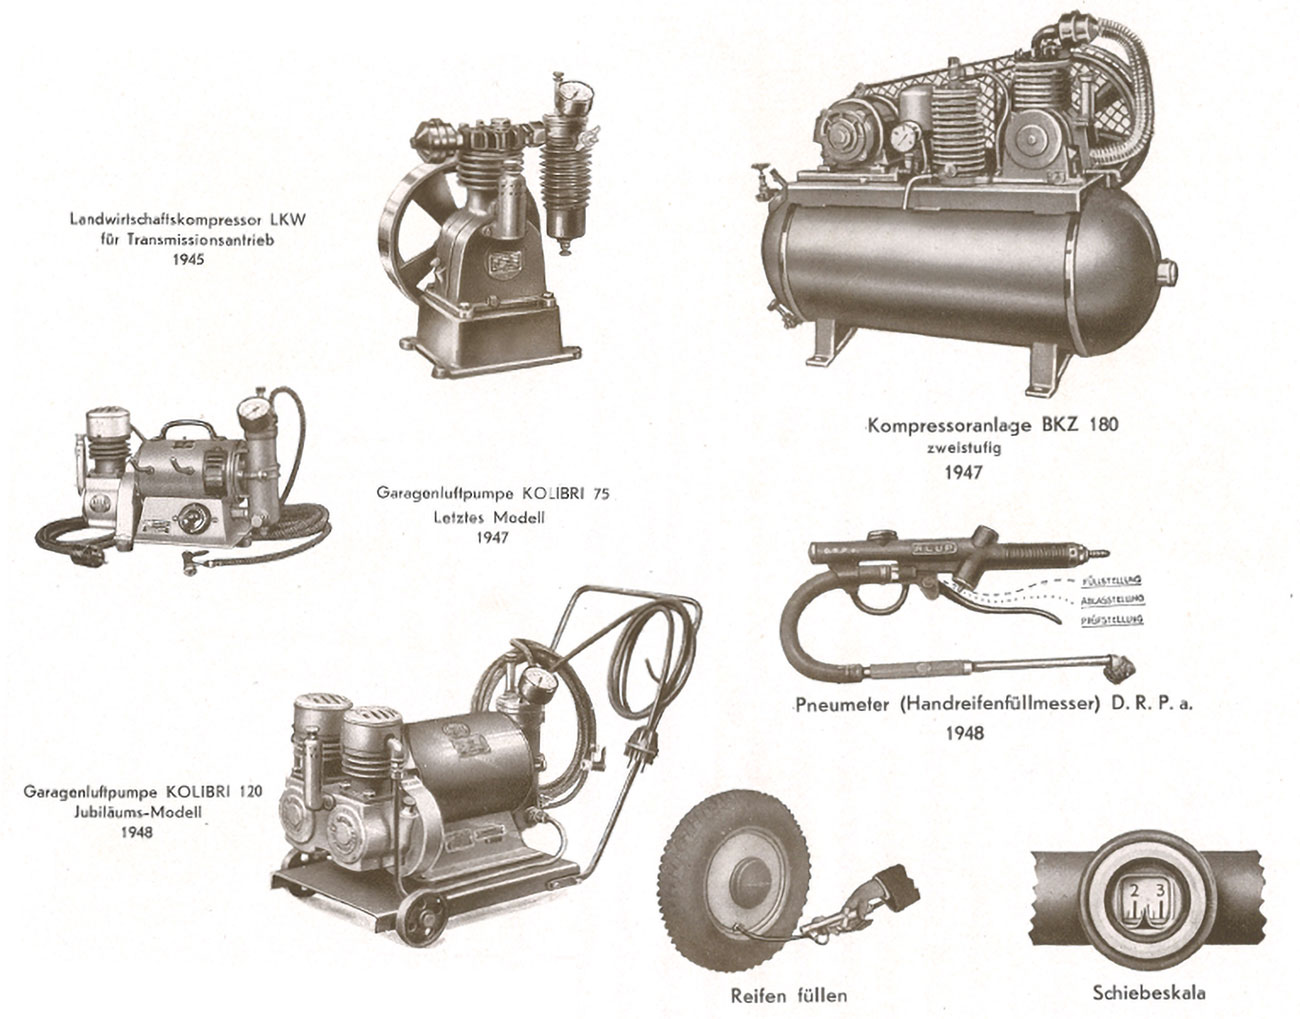 Utensili pneumatici e compressori di Adolf Ehmann degli anni '40